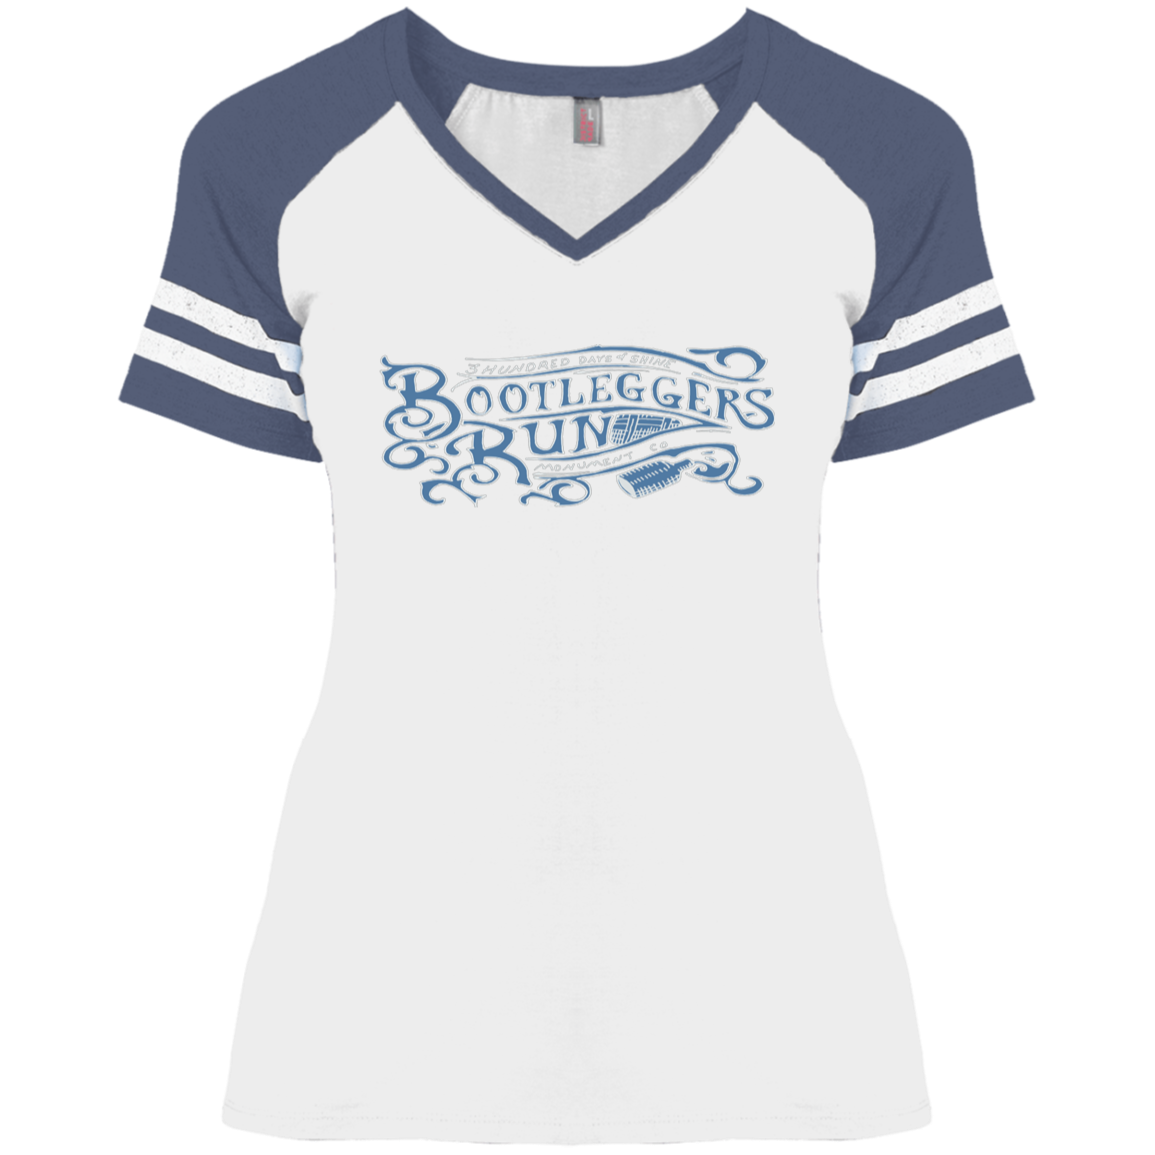 Bootleggers Run - 3 Hundred Days - Ladies' Game V-Neck T-Shirt